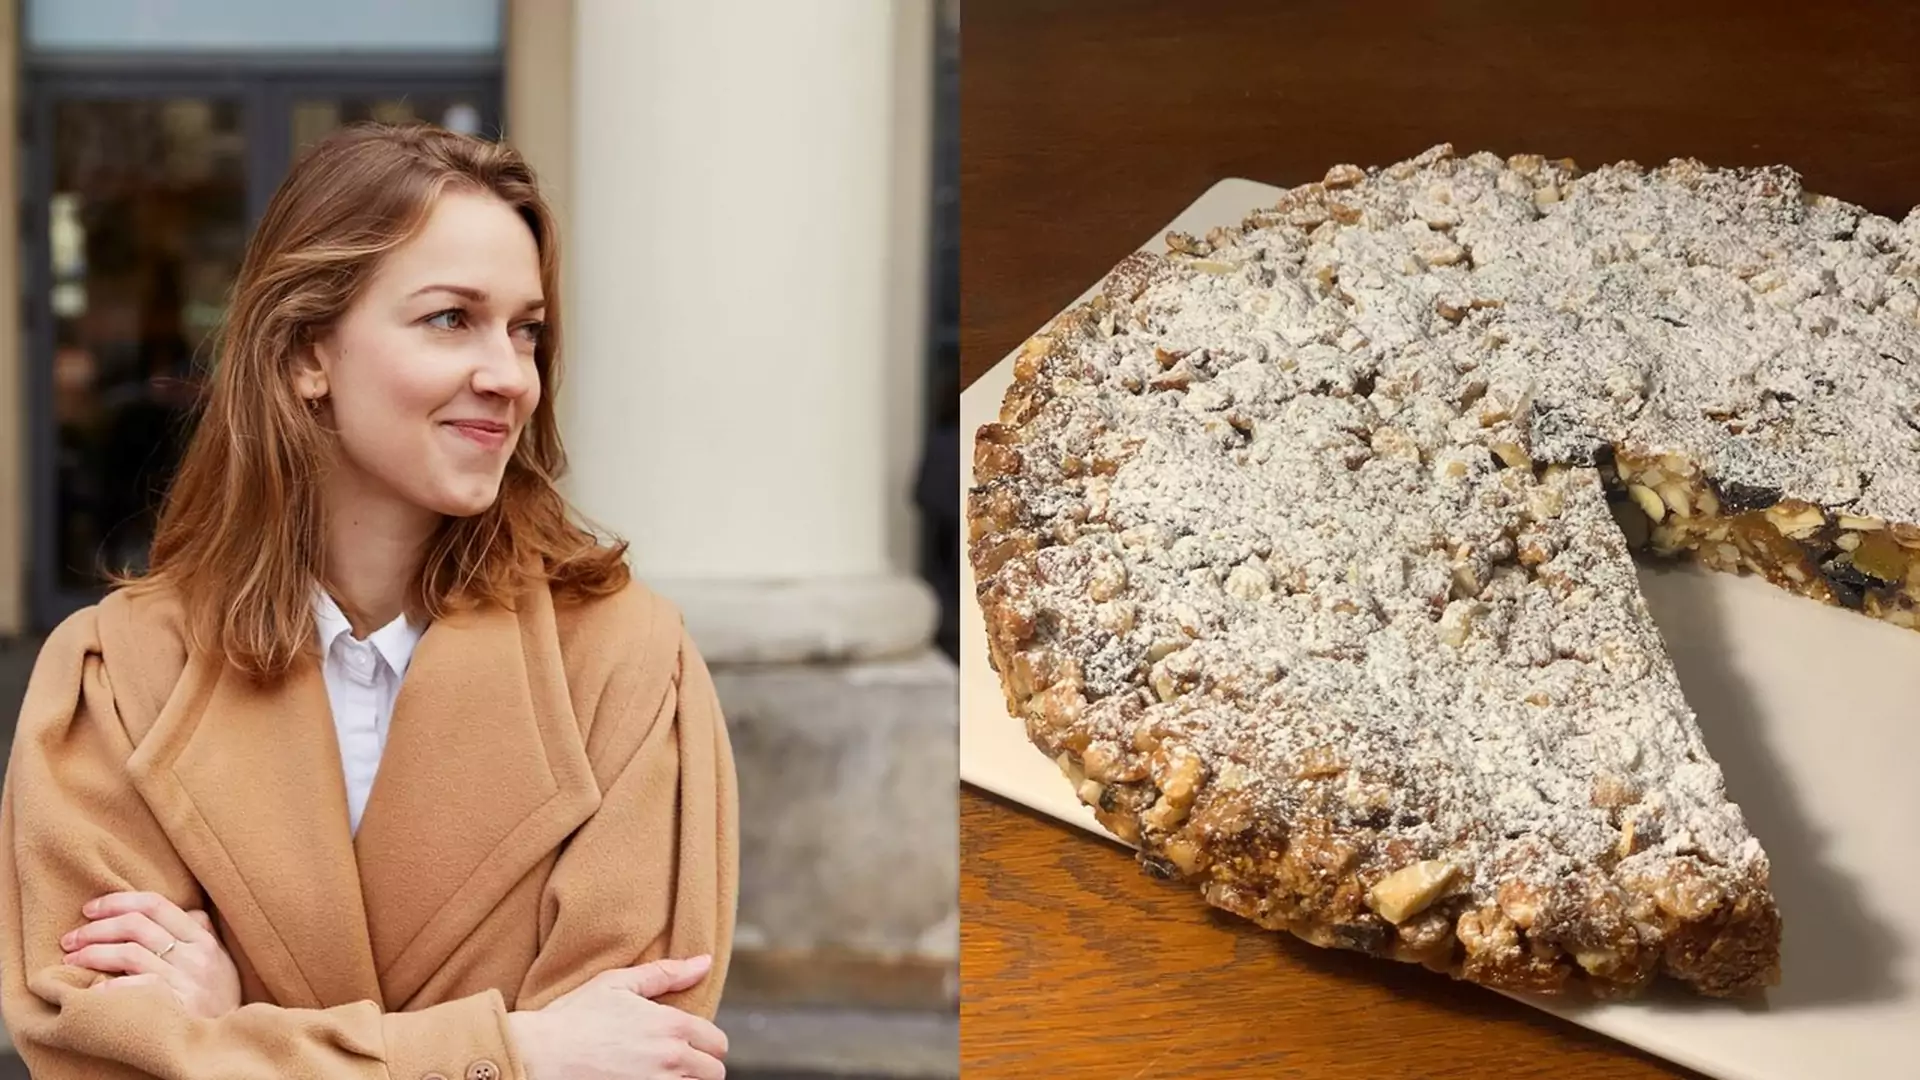 Wege święta: Basia Kłosińska dzieli się przepisem na włoskie ciasto panforte